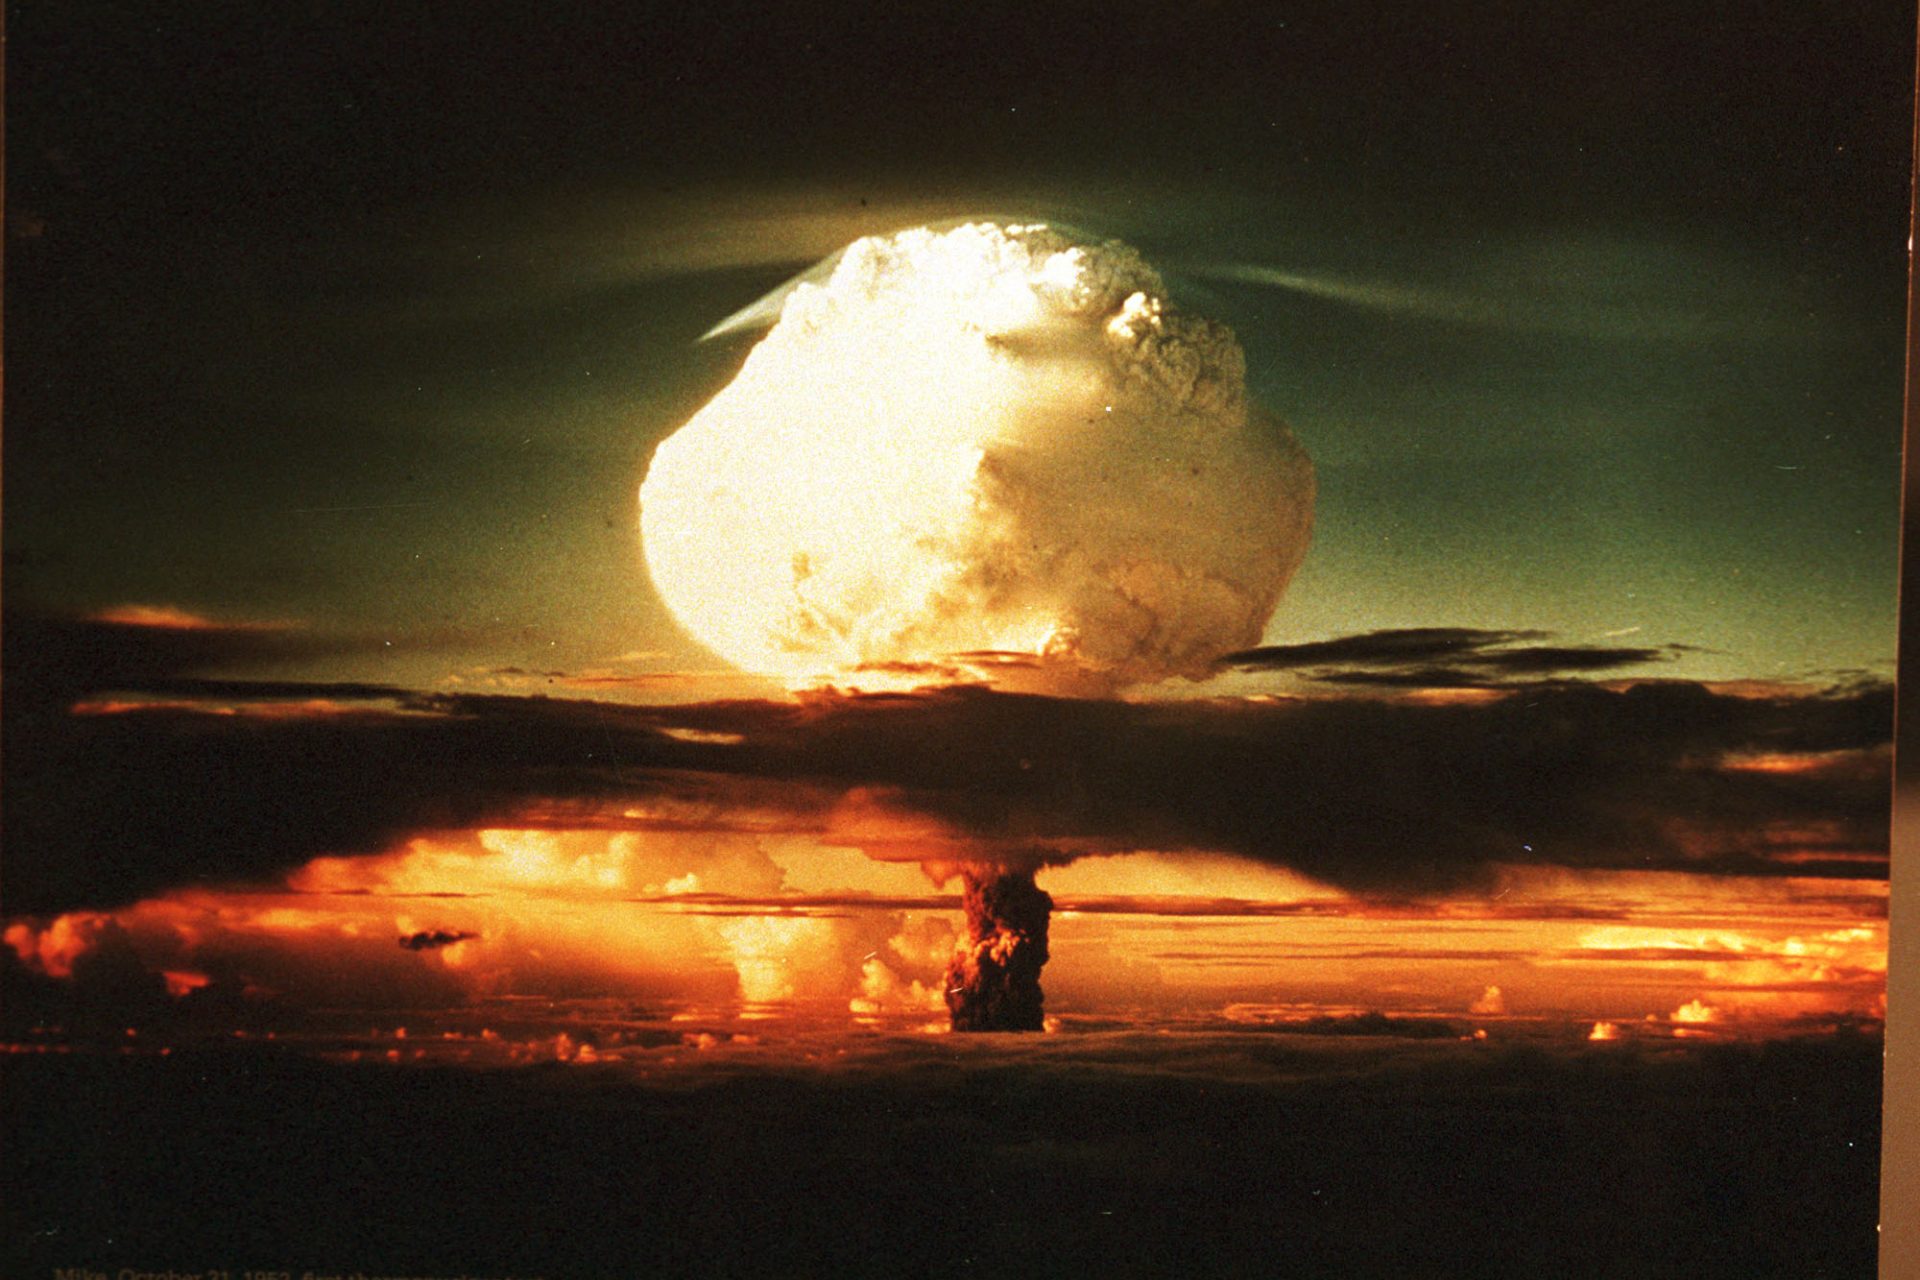 Jornalista descreve cenário desolador do mundo em uma guerra nuclear